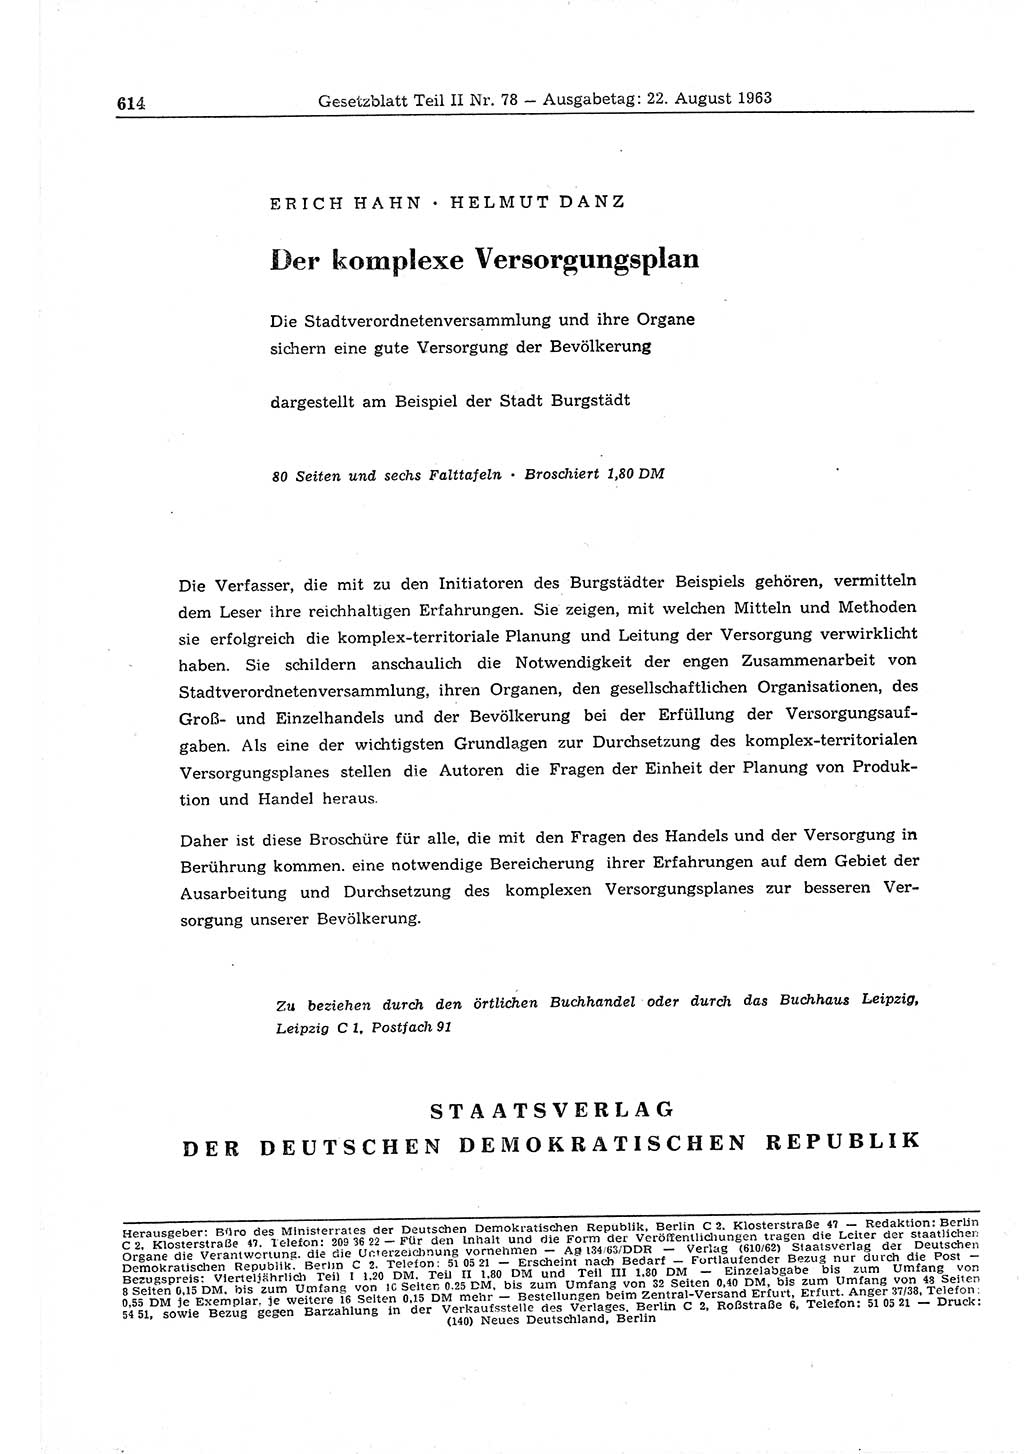 Gesetzblatt (GBl.) der Deutschen Demokratischen Republik (DDR) Teil ⅠⅠ 1963, Seite 614 (GBl. DDR ⅠⅠ 1963, S. 614)